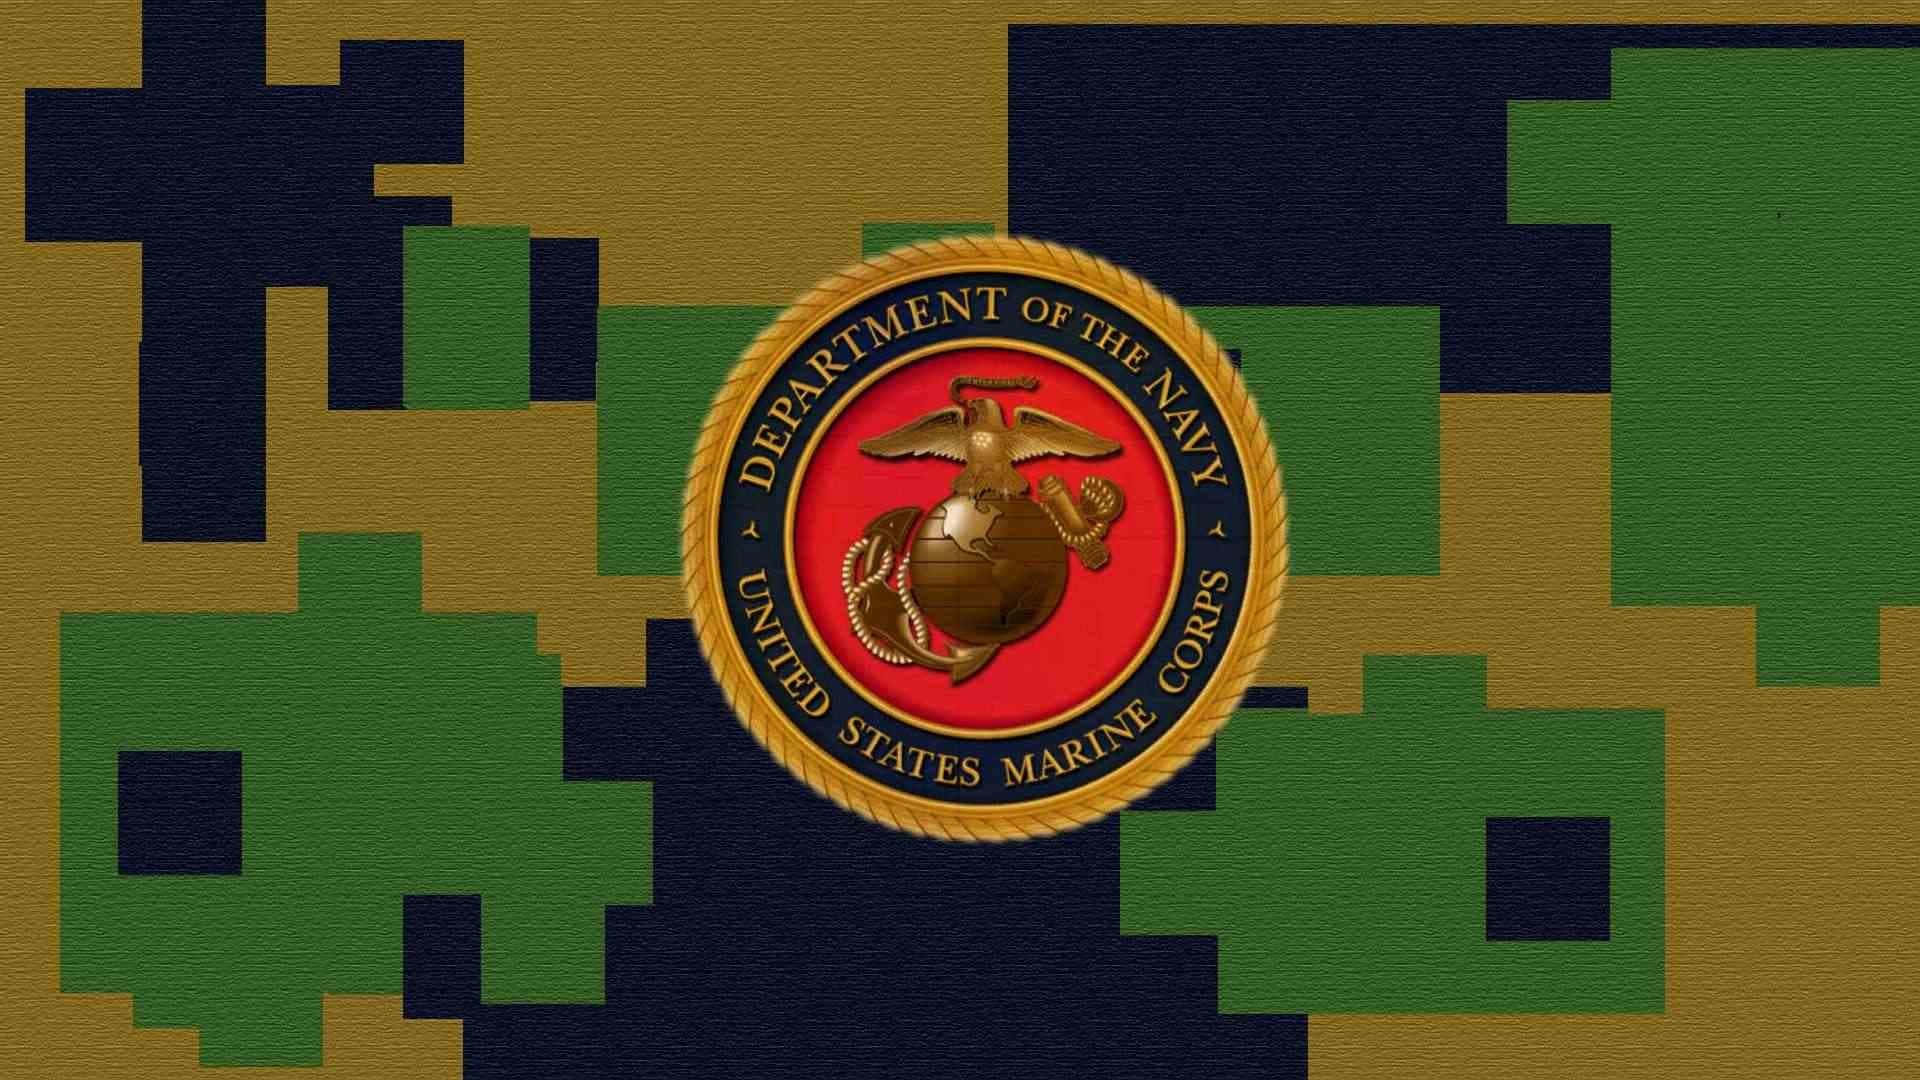 Muestratu Orgullo Y Apoya A Nuestros Marines. Fondo de pantalla